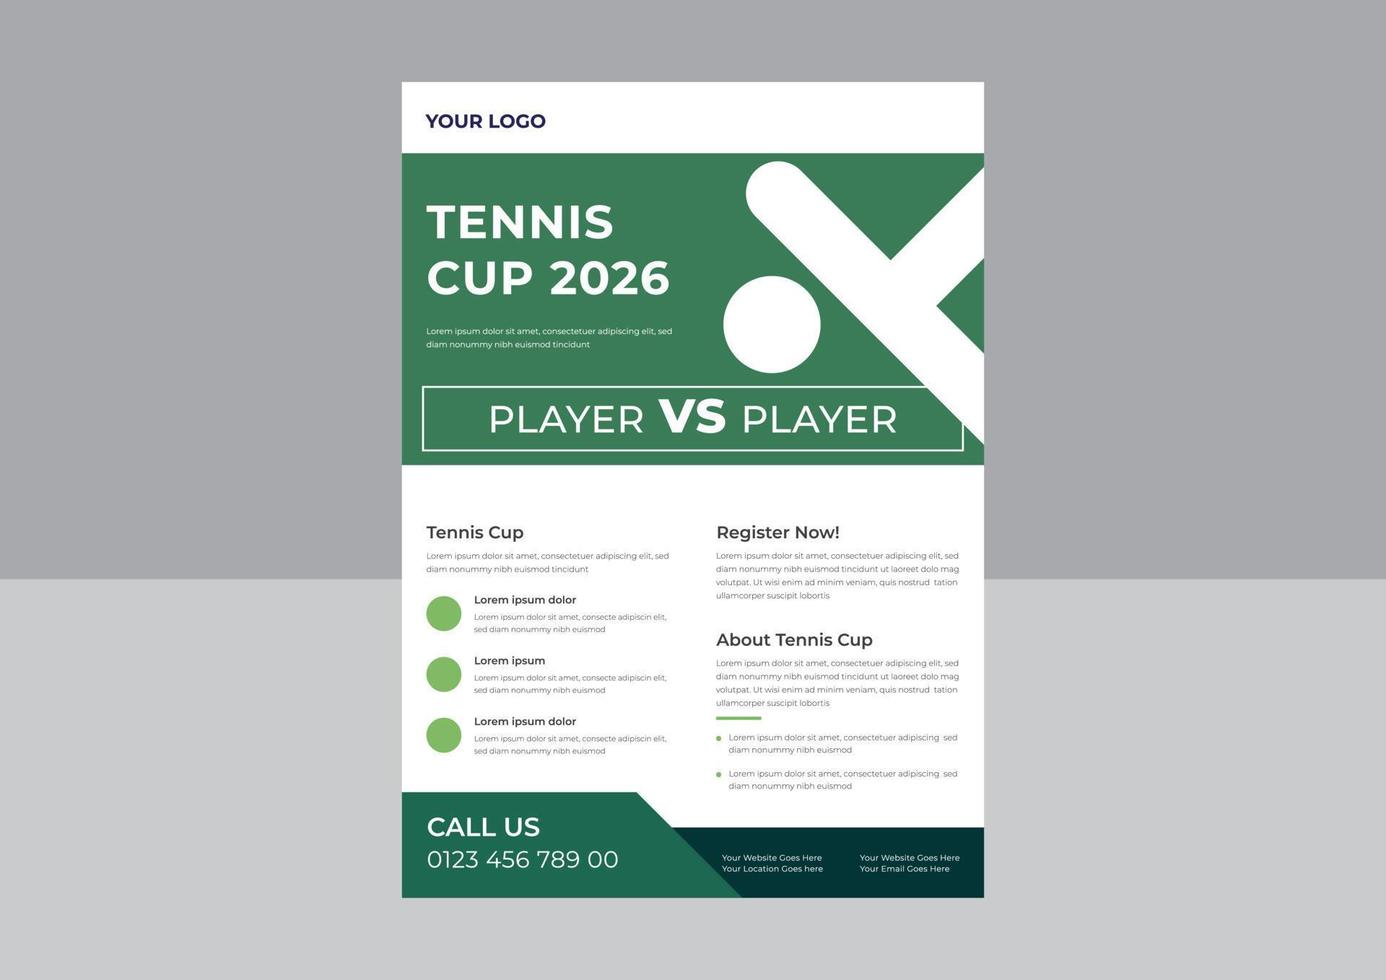 Tennis-Poster-Set-Vektor-Flyer, Tennis-Turnier-Flyer-Design-Vorlage, Tennis-Poster-Set-Vektor, A4-Vorlage, Broschüren-Design, Cover, Flyer, Poster, druckfertig vektor